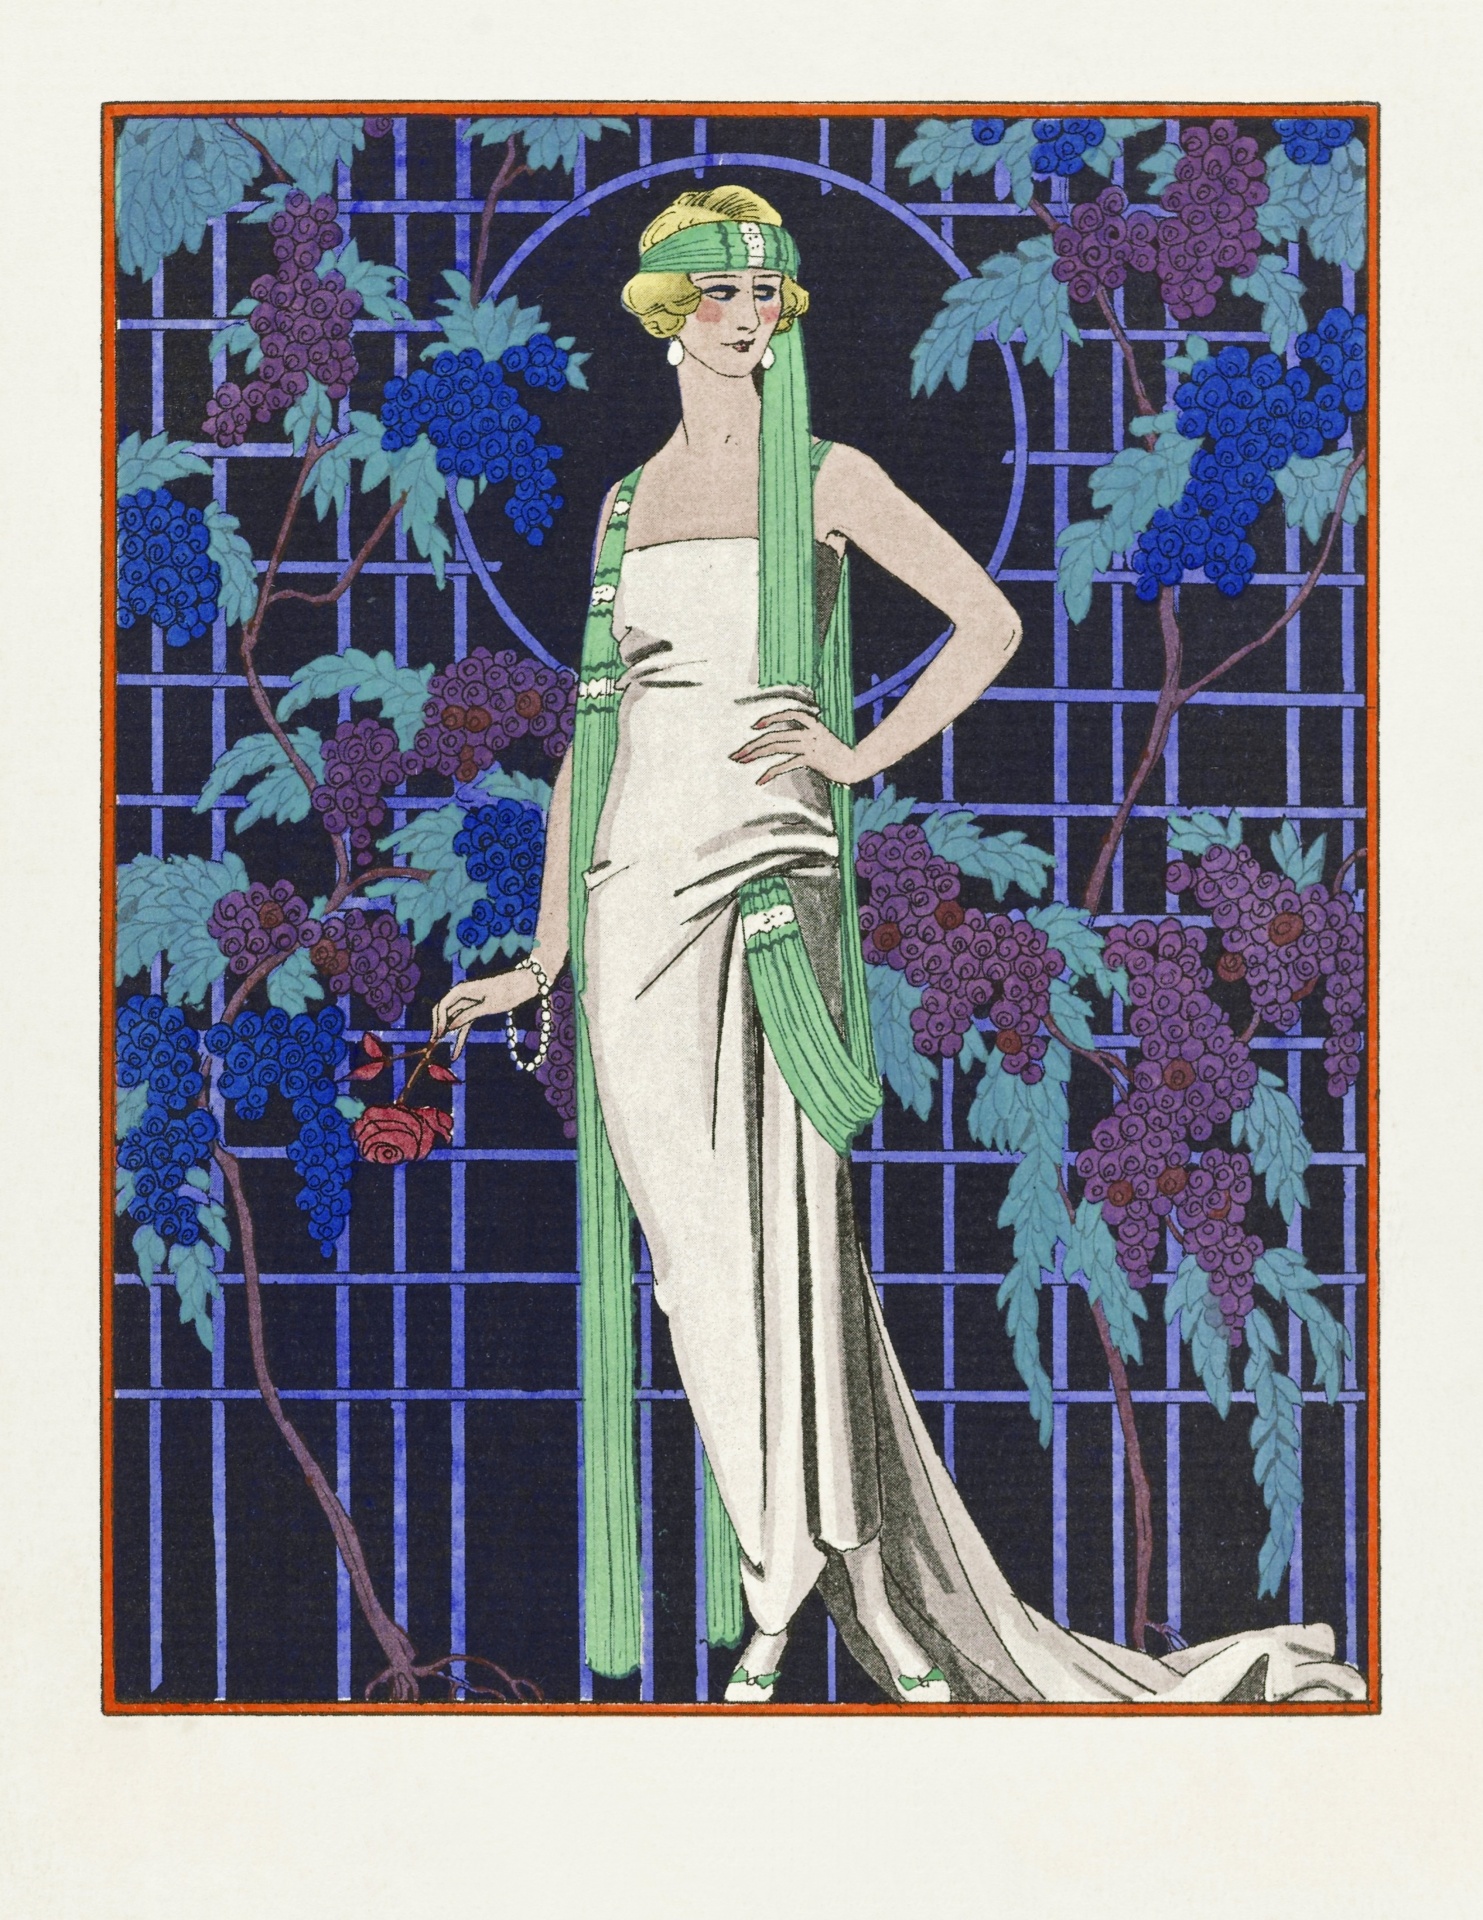 Woman girl art nouveau hand painted illustration